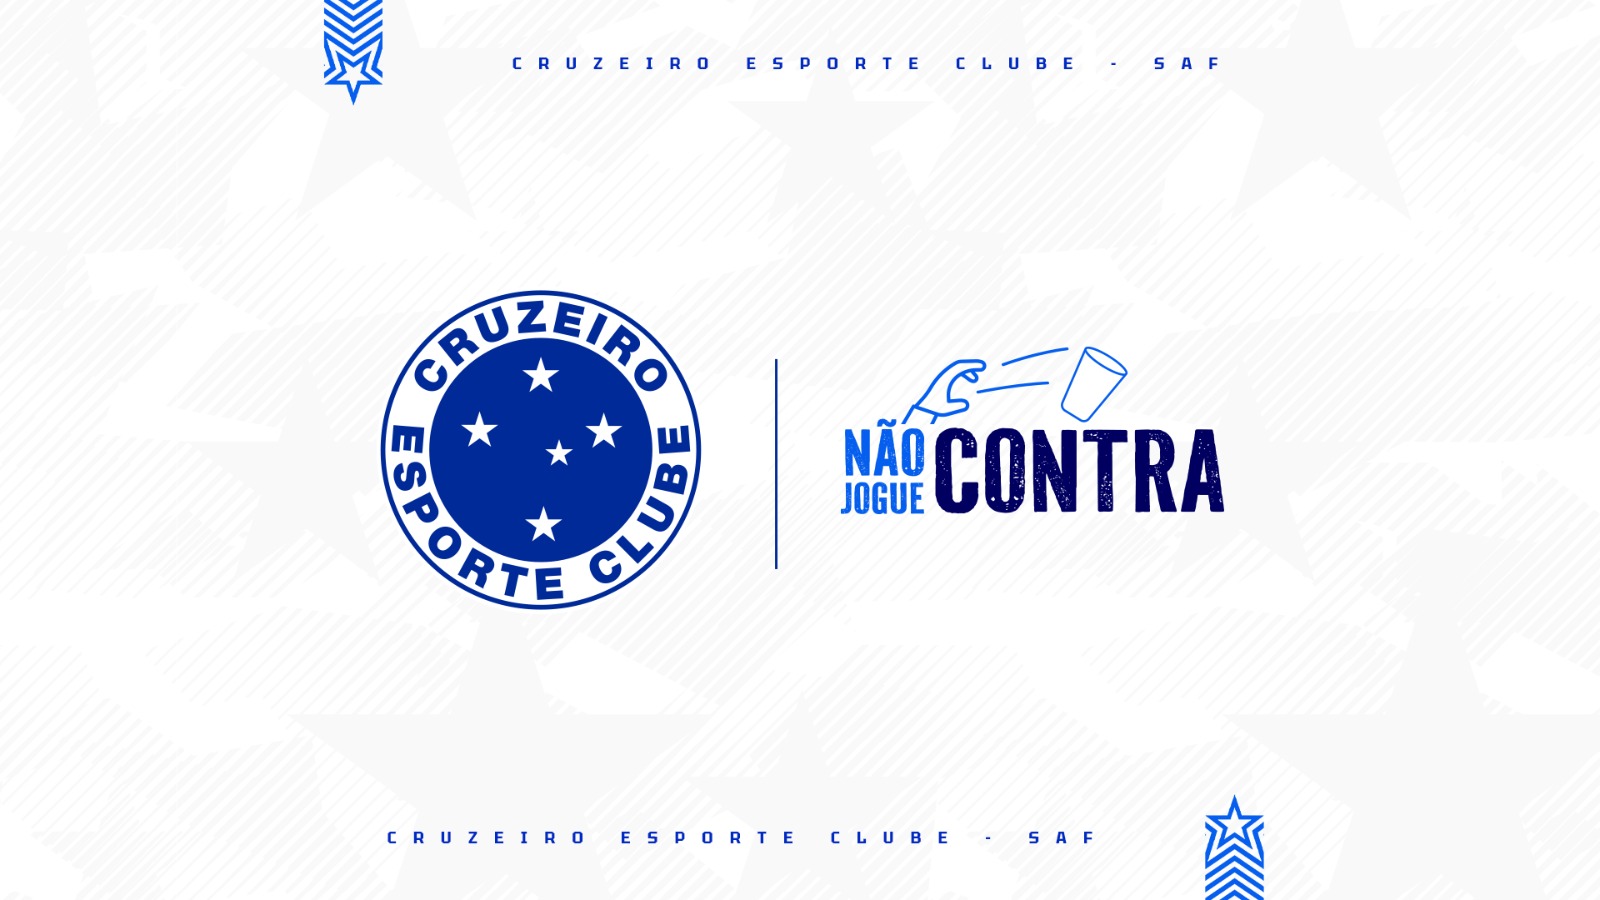 "NÃO JOGUE CONTRA!" Cruzeiro realizará campanha para conscientização sobre os danos do arremesso de objetos em campo